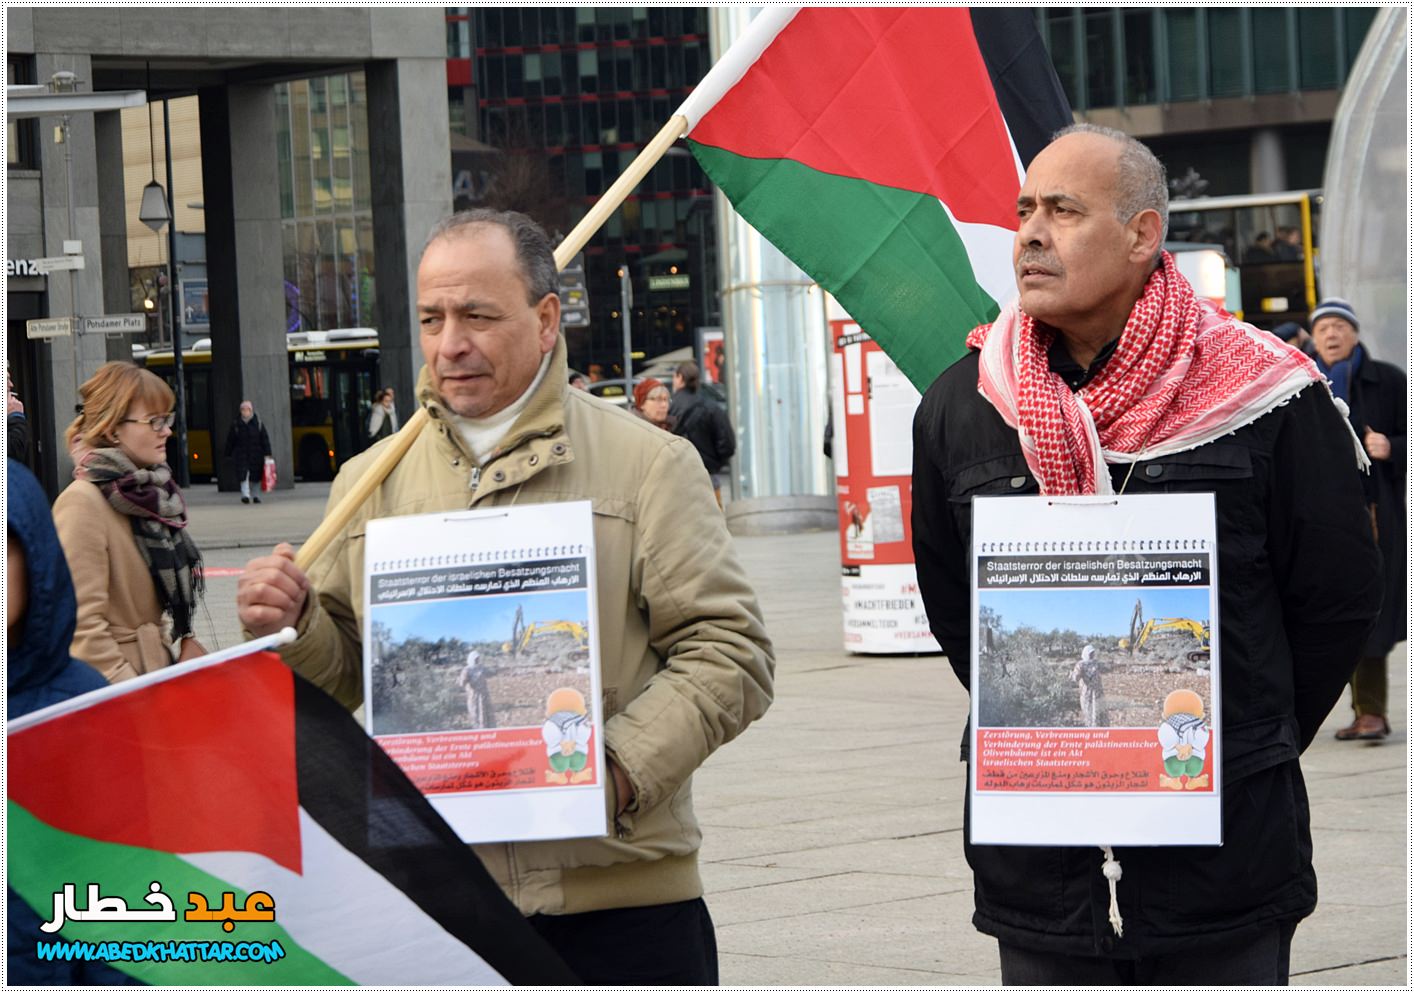  وقفة تضامن ودعم وتأييد للأسرى الفلسطينيين